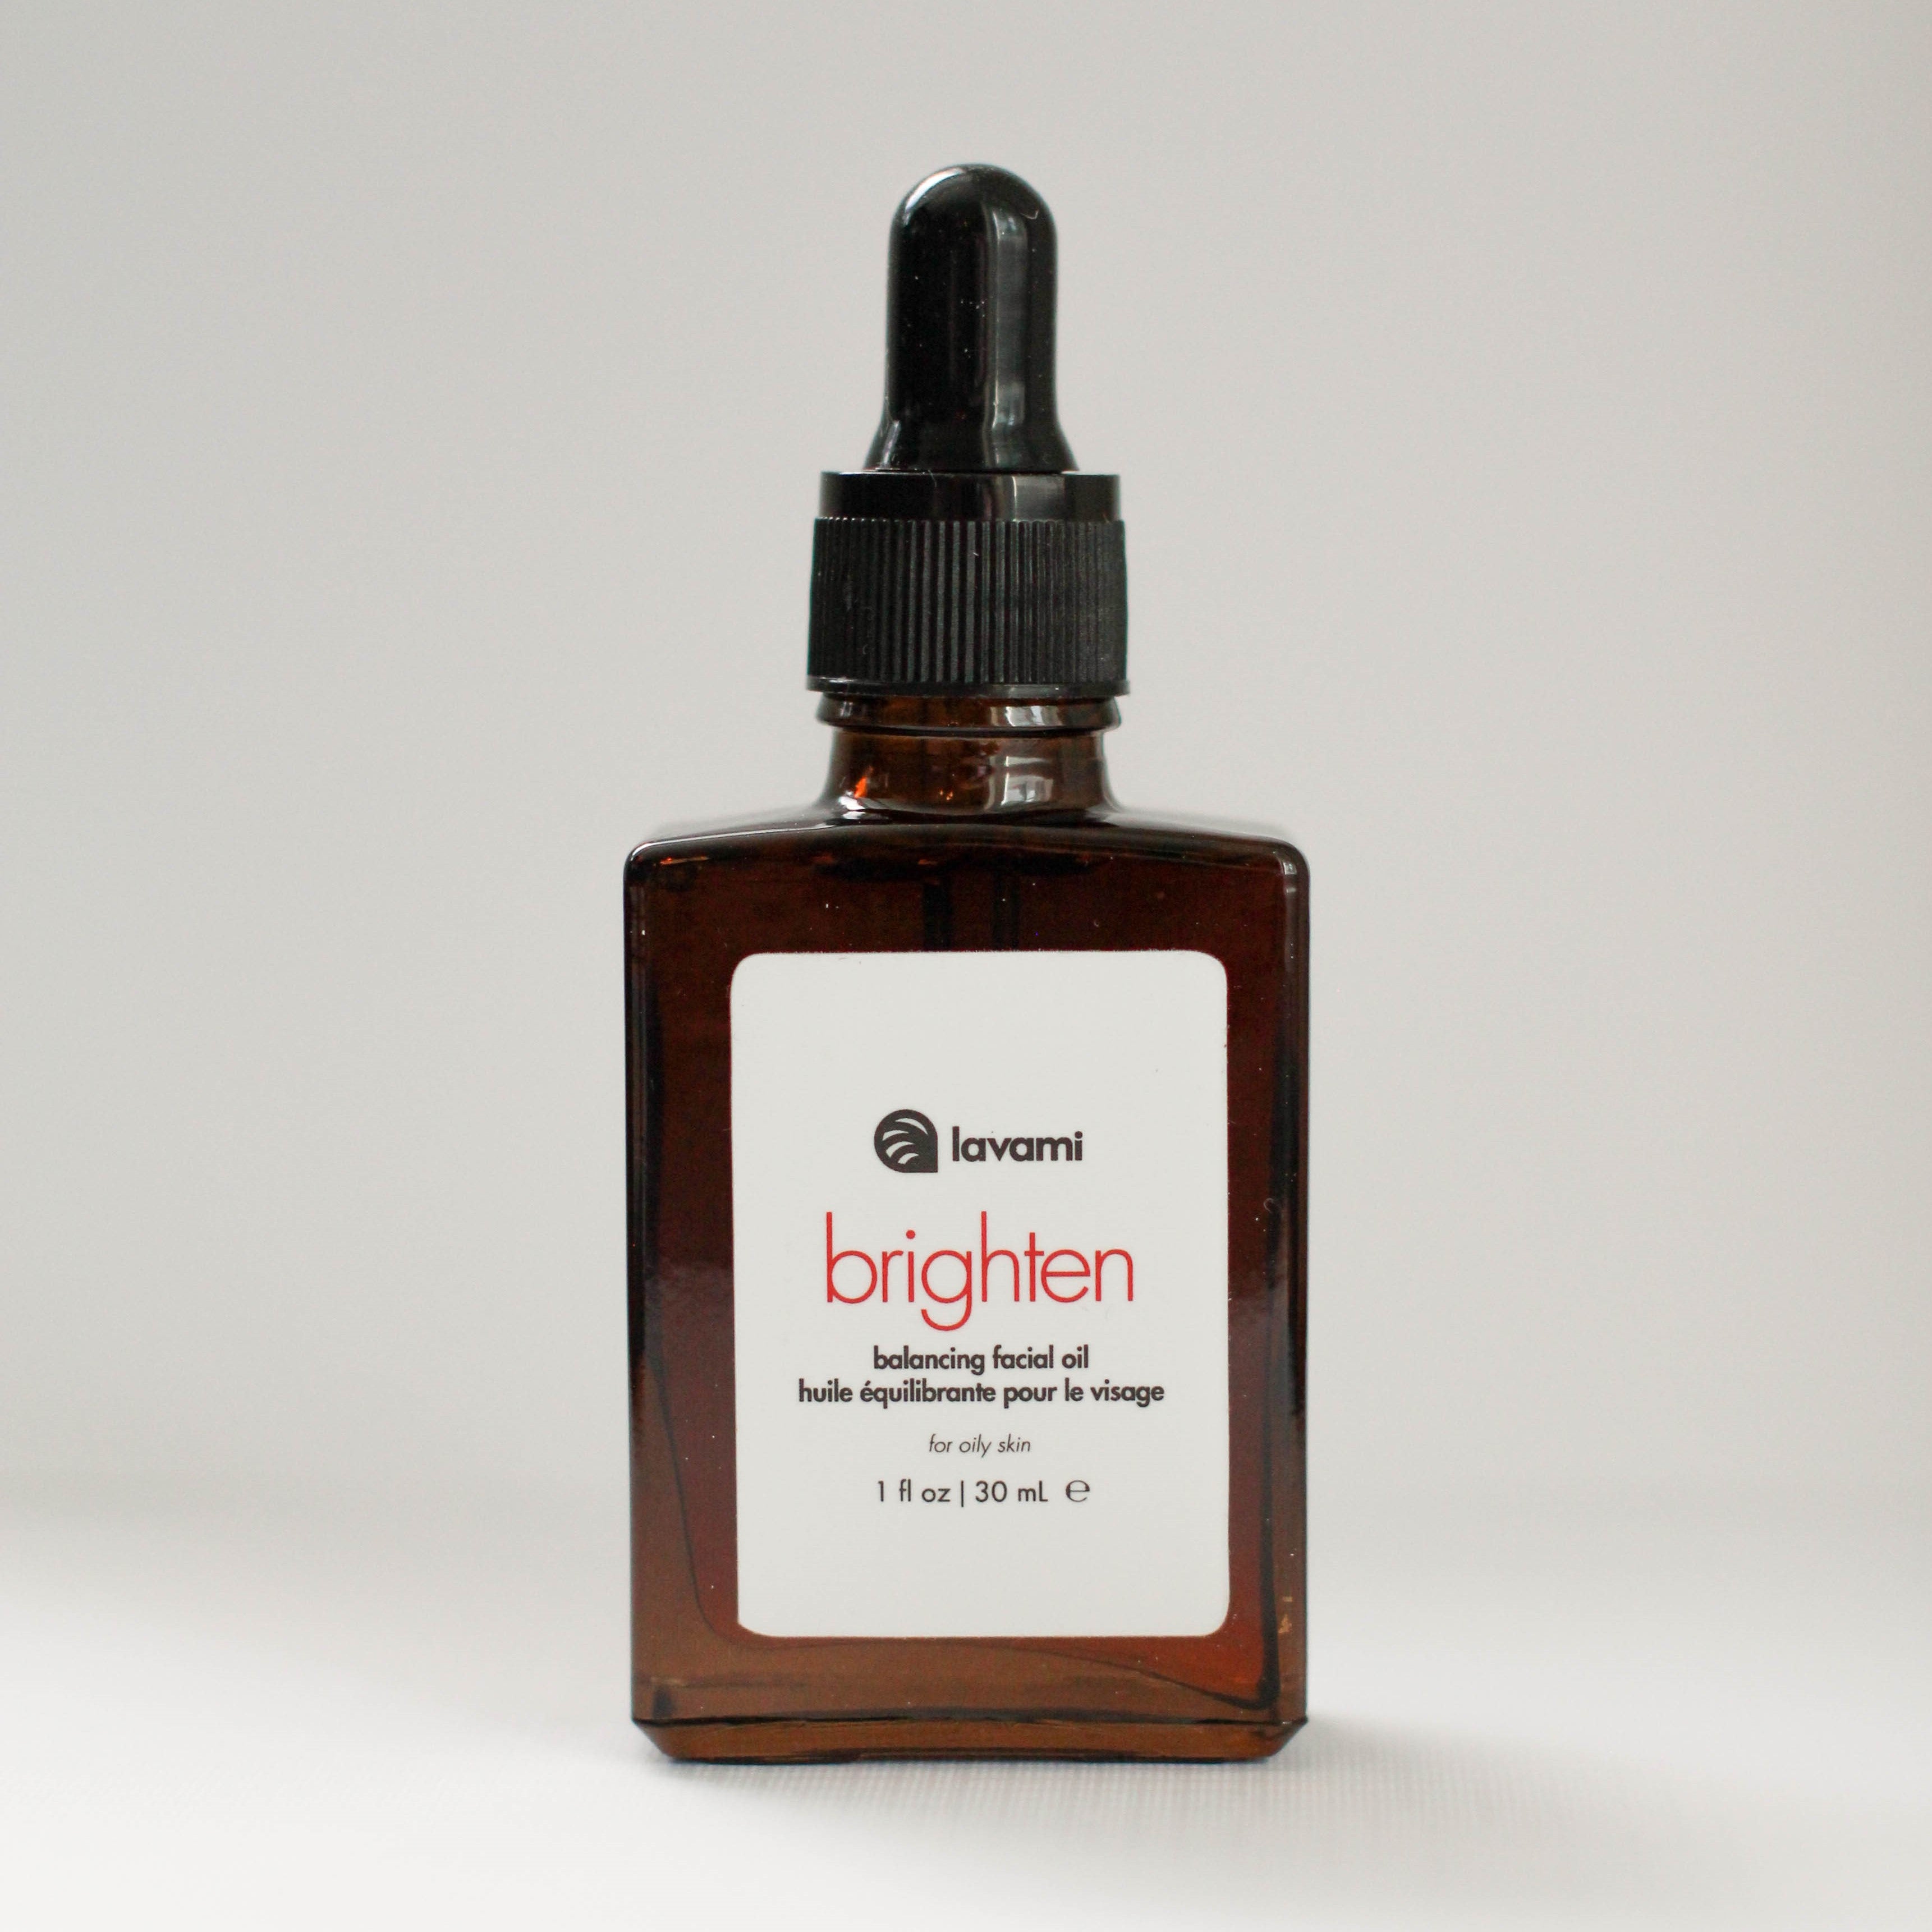 Brighten squalane face oil for oily, acne-prone and combination skin